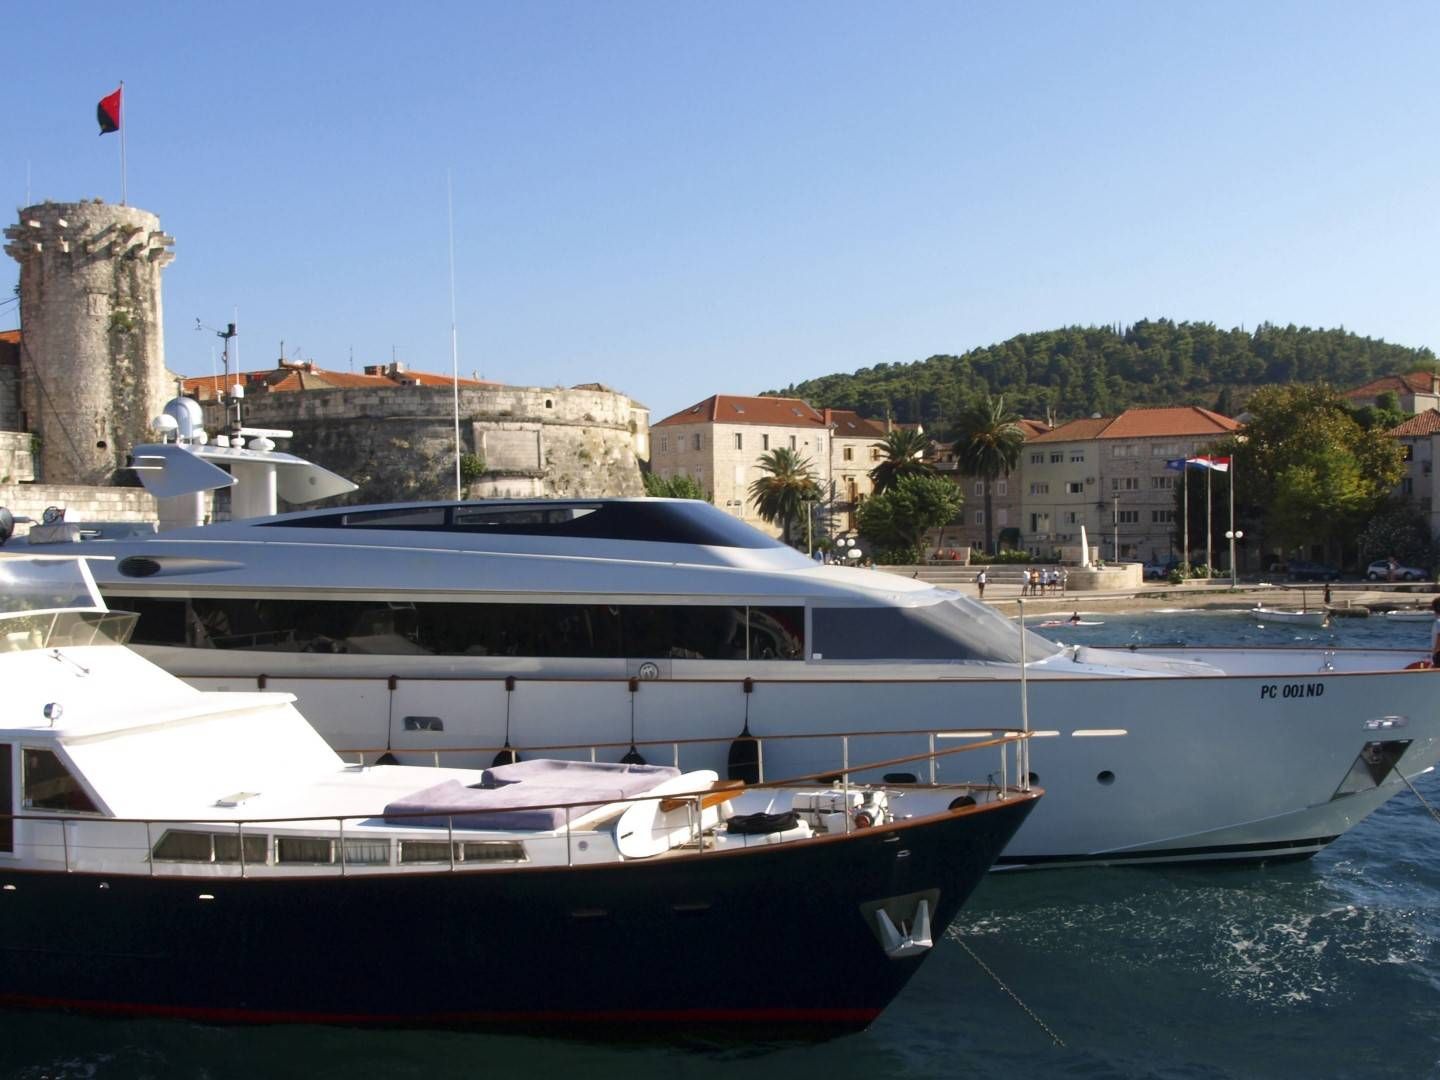 Luxusyachten vor der historischen Festung im Hafen von Korcula, Kroatien | Foto: picture alliance / blickwinkel